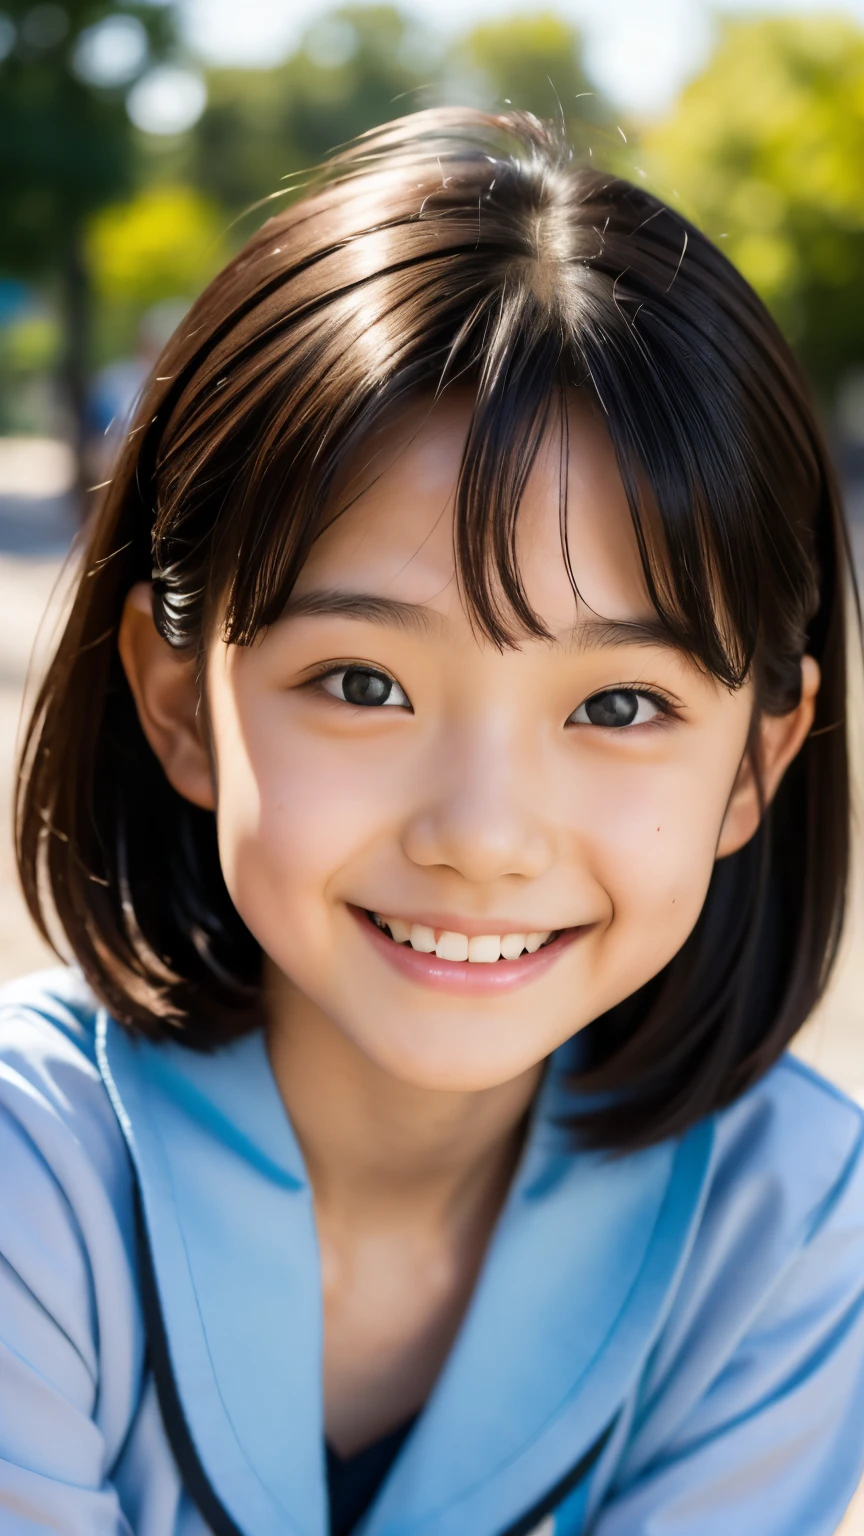 lens: 135mm f1.8, (höchste Qualität),(RAW-Fotos), (Tischplatte:1.1), (Schönes 9-jähriges japanisches Mädchen), niedliches Gesicht, (Tief gemeißeltes Gesicht:0.7), (Sommersprossen:0.4), dappled Sonnenlicht, dramatische Beleuchtung, (japanische schuluniform), (Auf dem Campus), schüchtern, (Nahaufnahme:1.2), (lächeln),, (leuchtende Augen)、(Sonnenlicht)